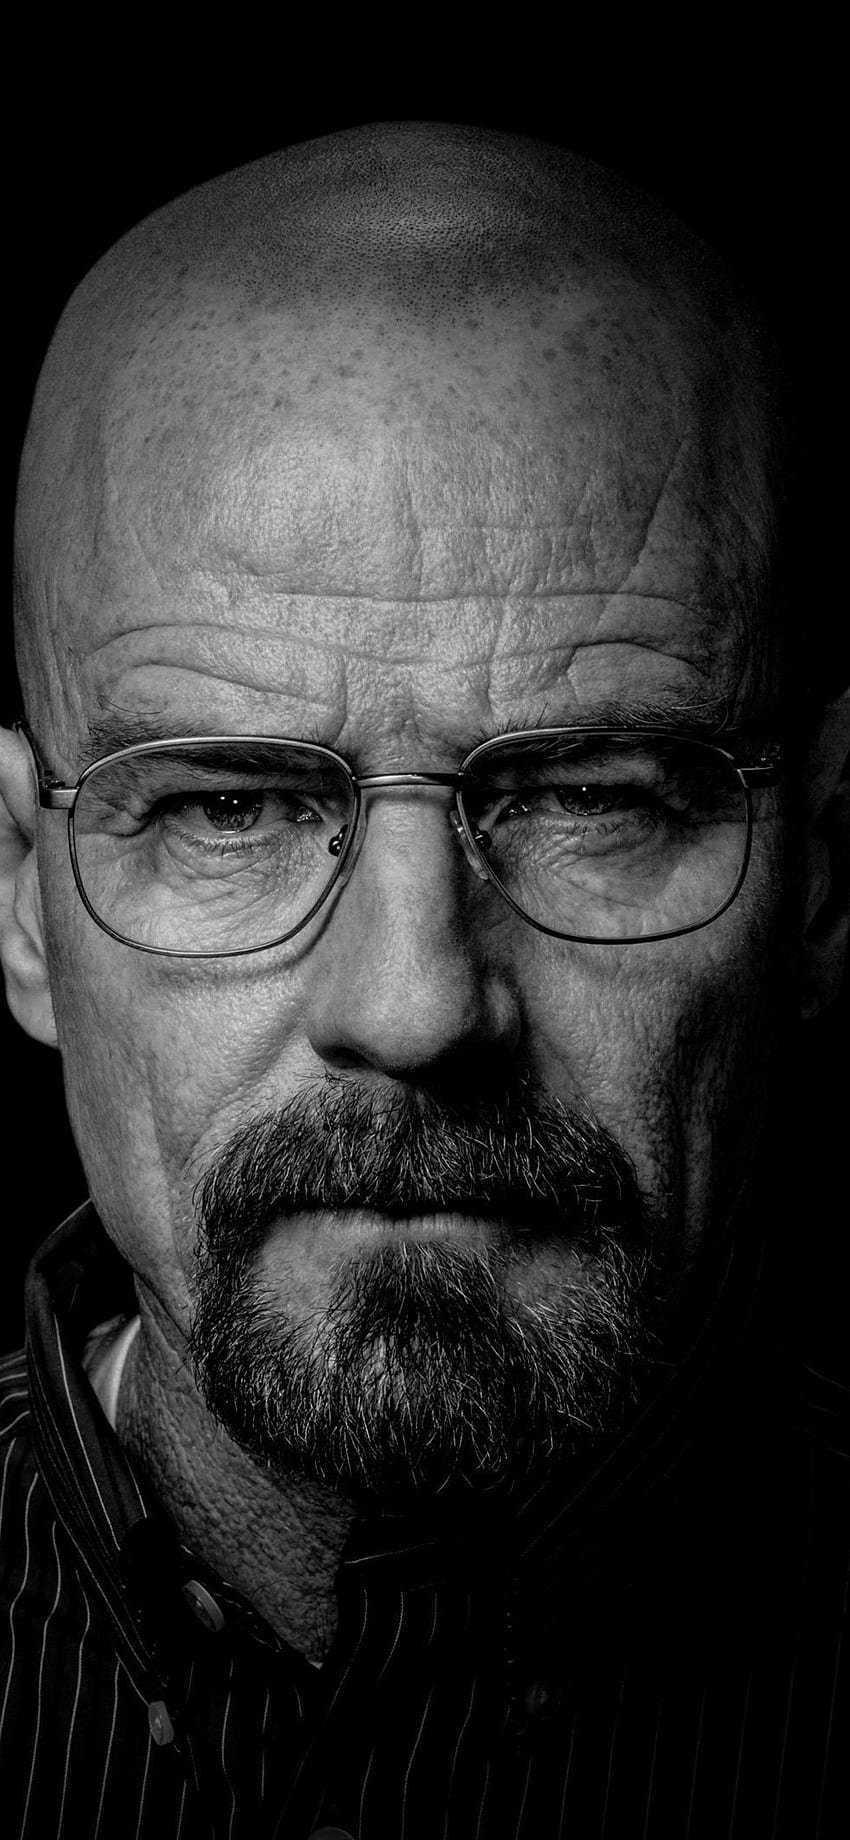 Walter White von Breaking Bad iPhone XS MAX HD-Handy-Hintergrundbild